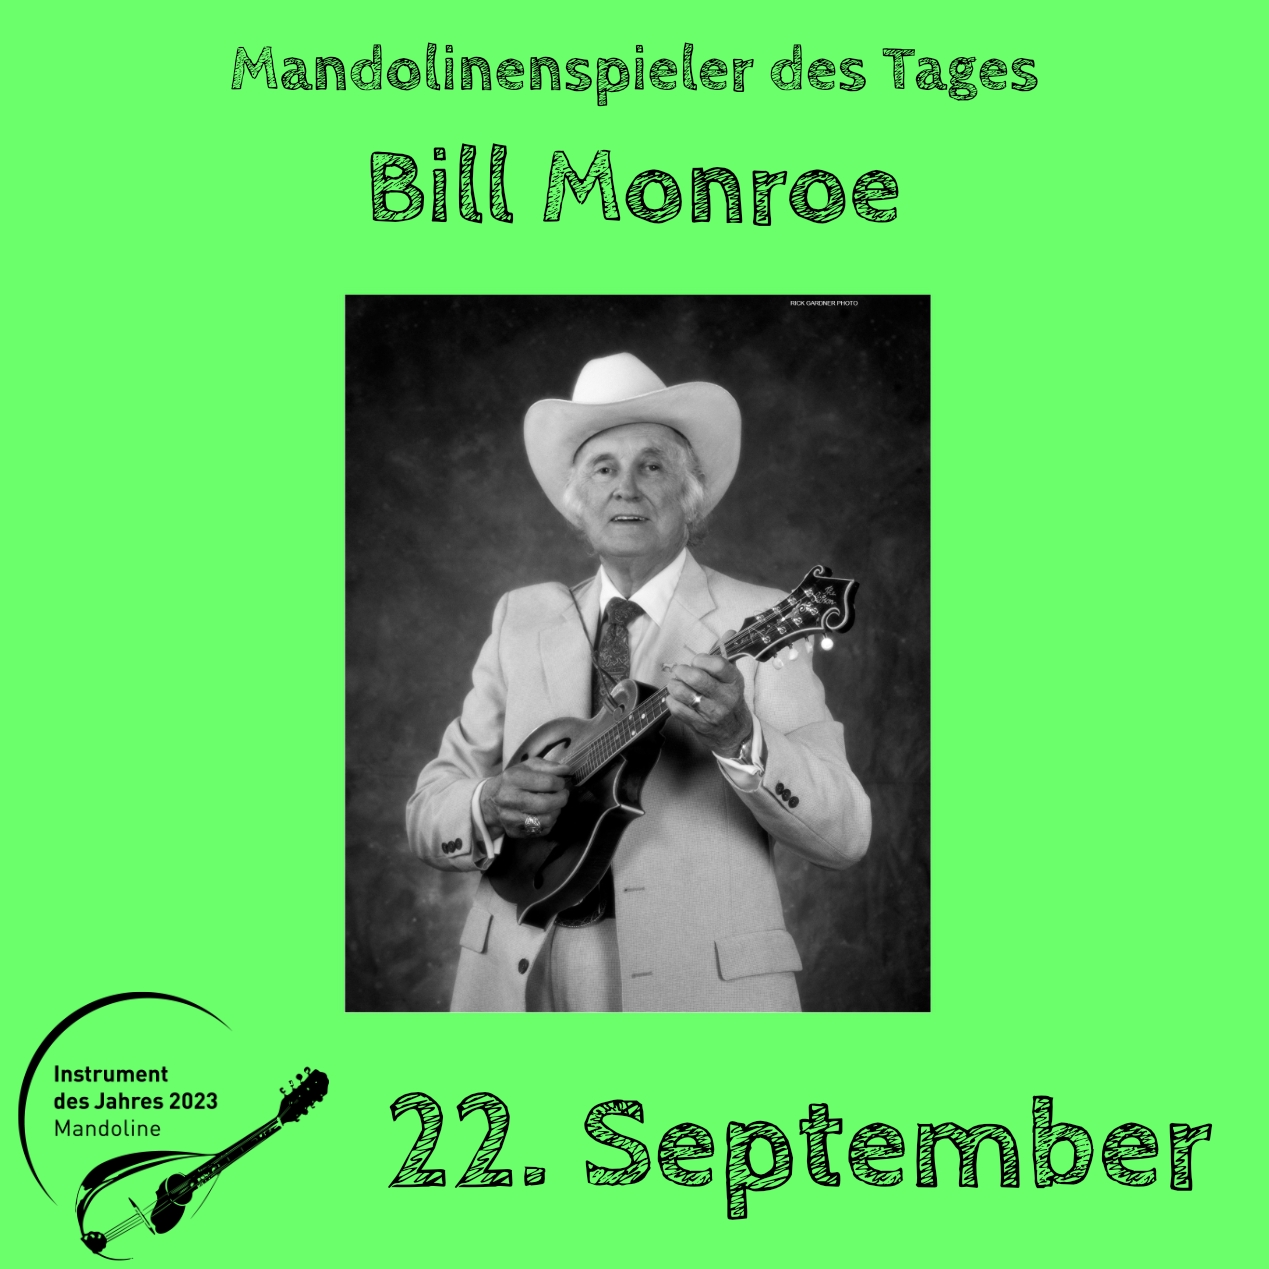 22. September - Bill Monroe Mandoline Instrument des Jahres 2023 Mandolinenspieler Mandolinenspielerin des Tages